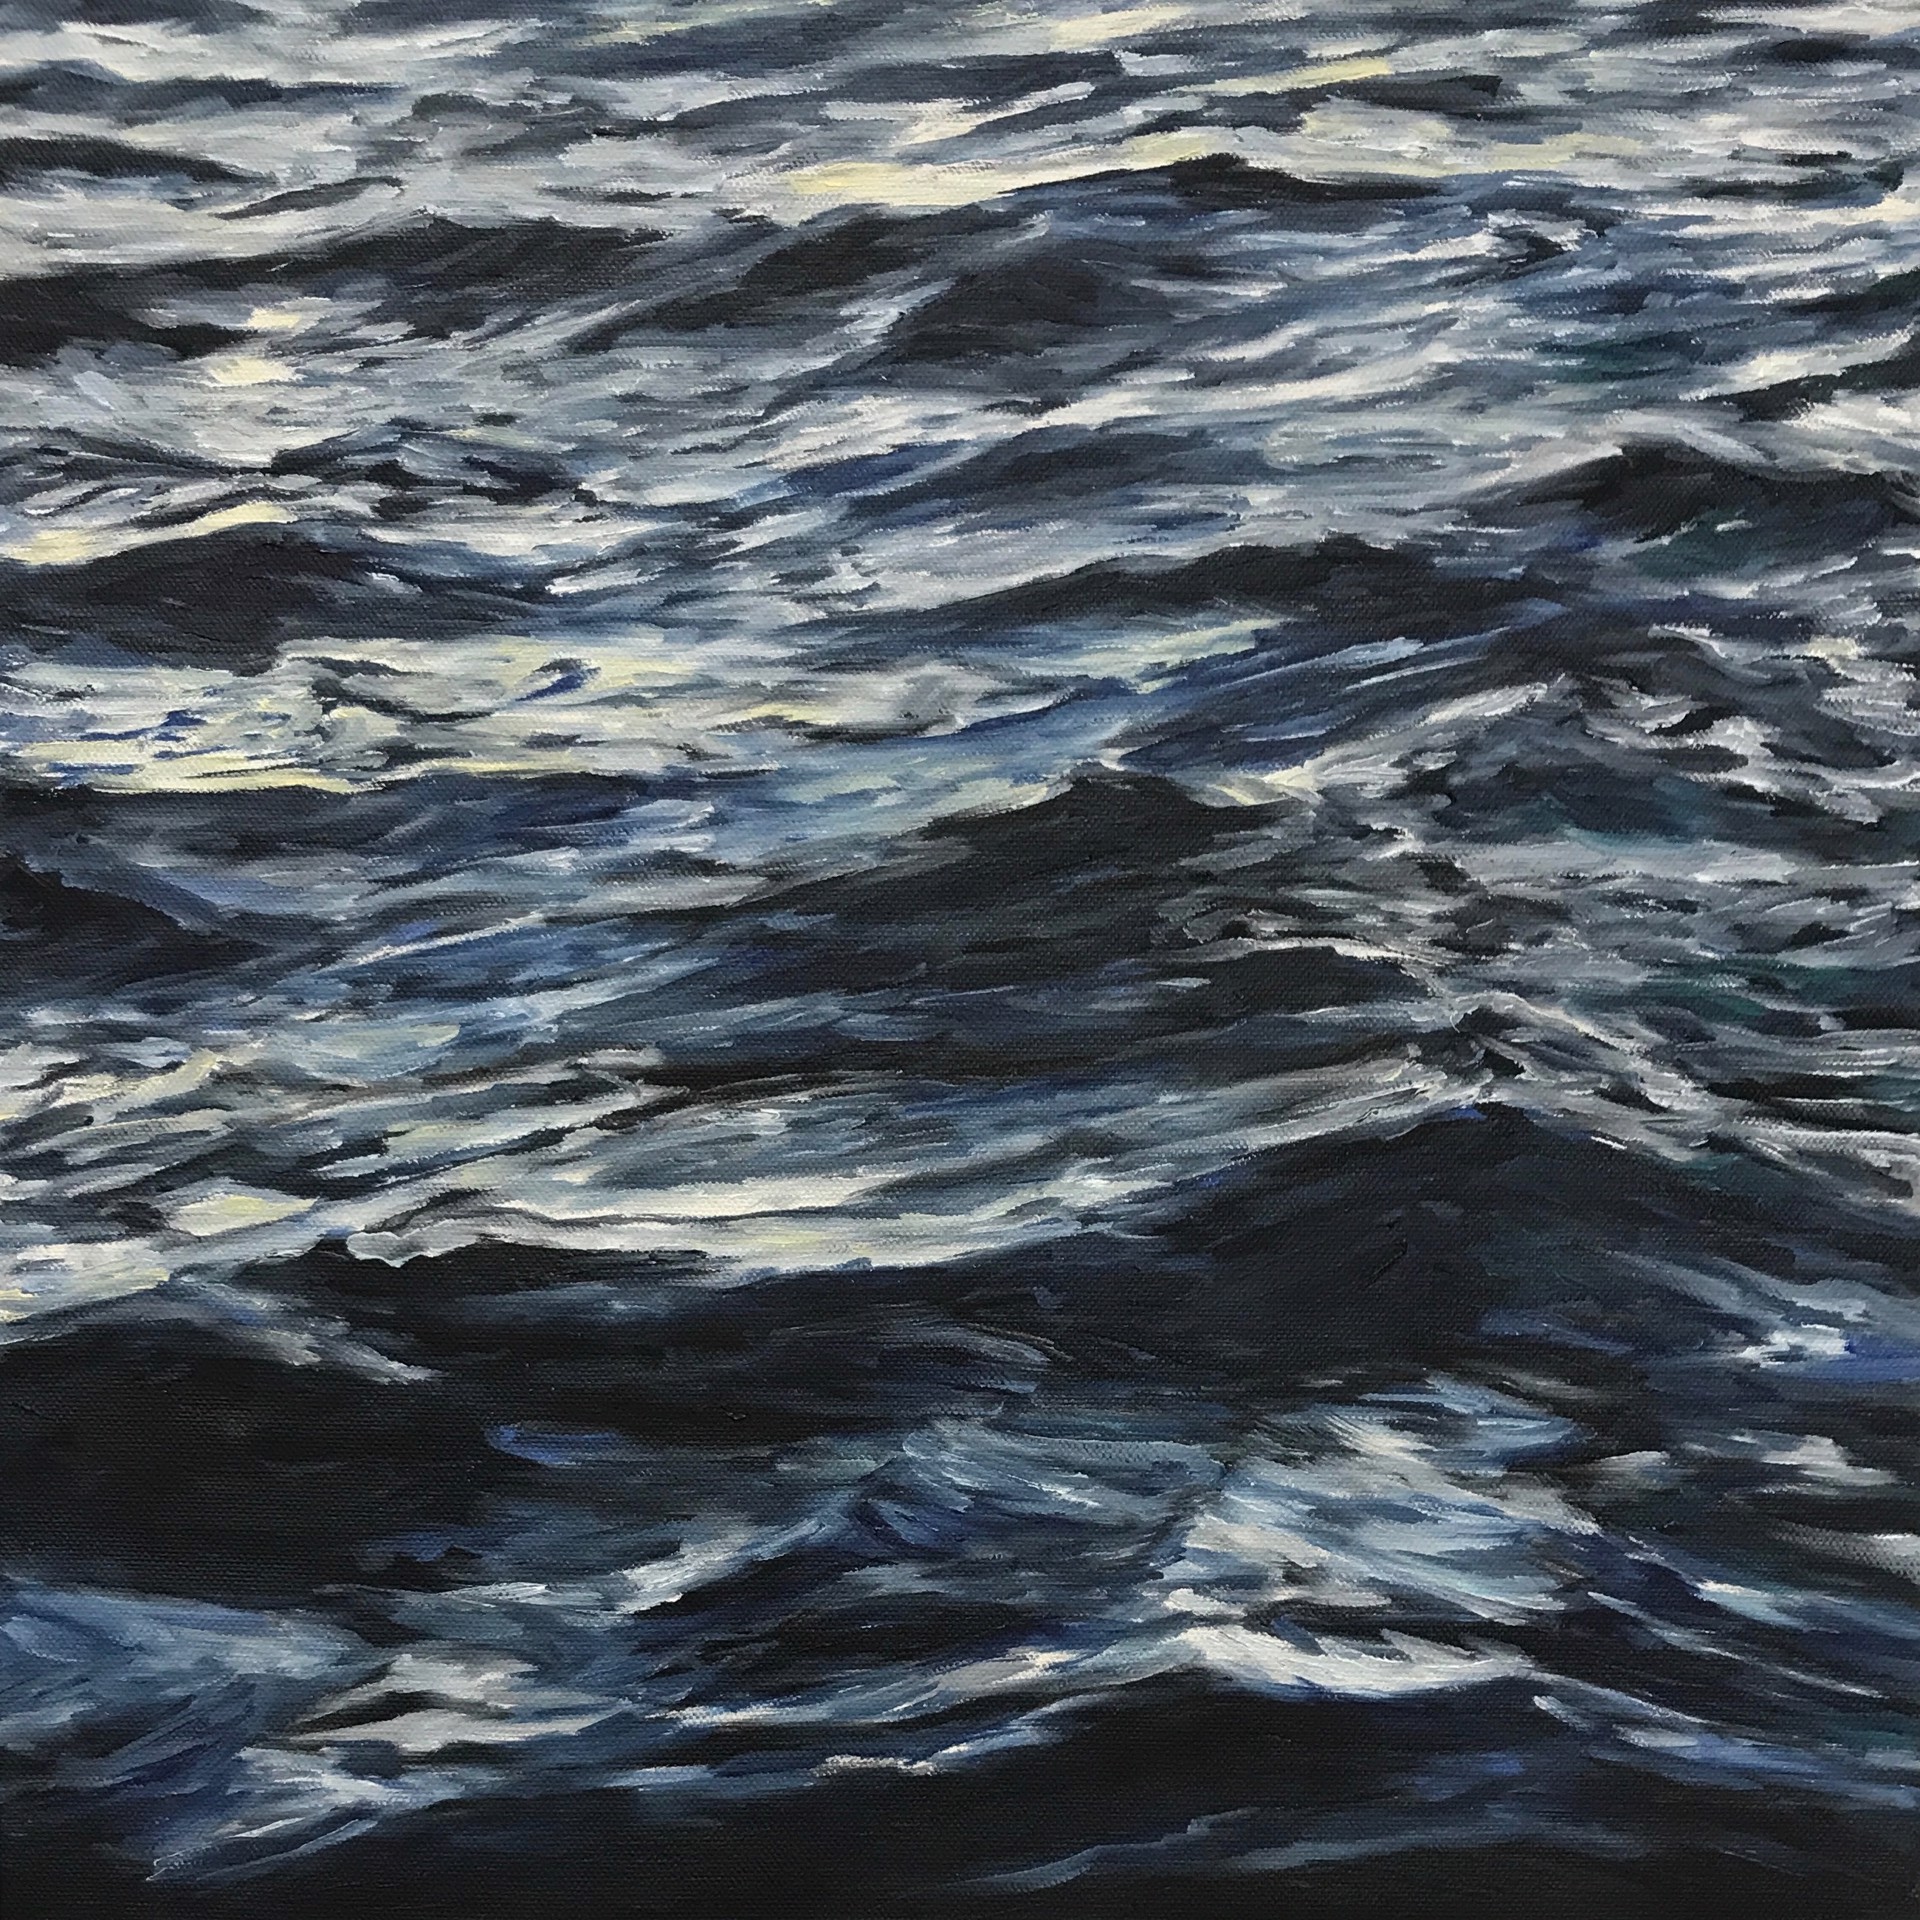 Lahaina Waves 5 by Valerie Eickmeier